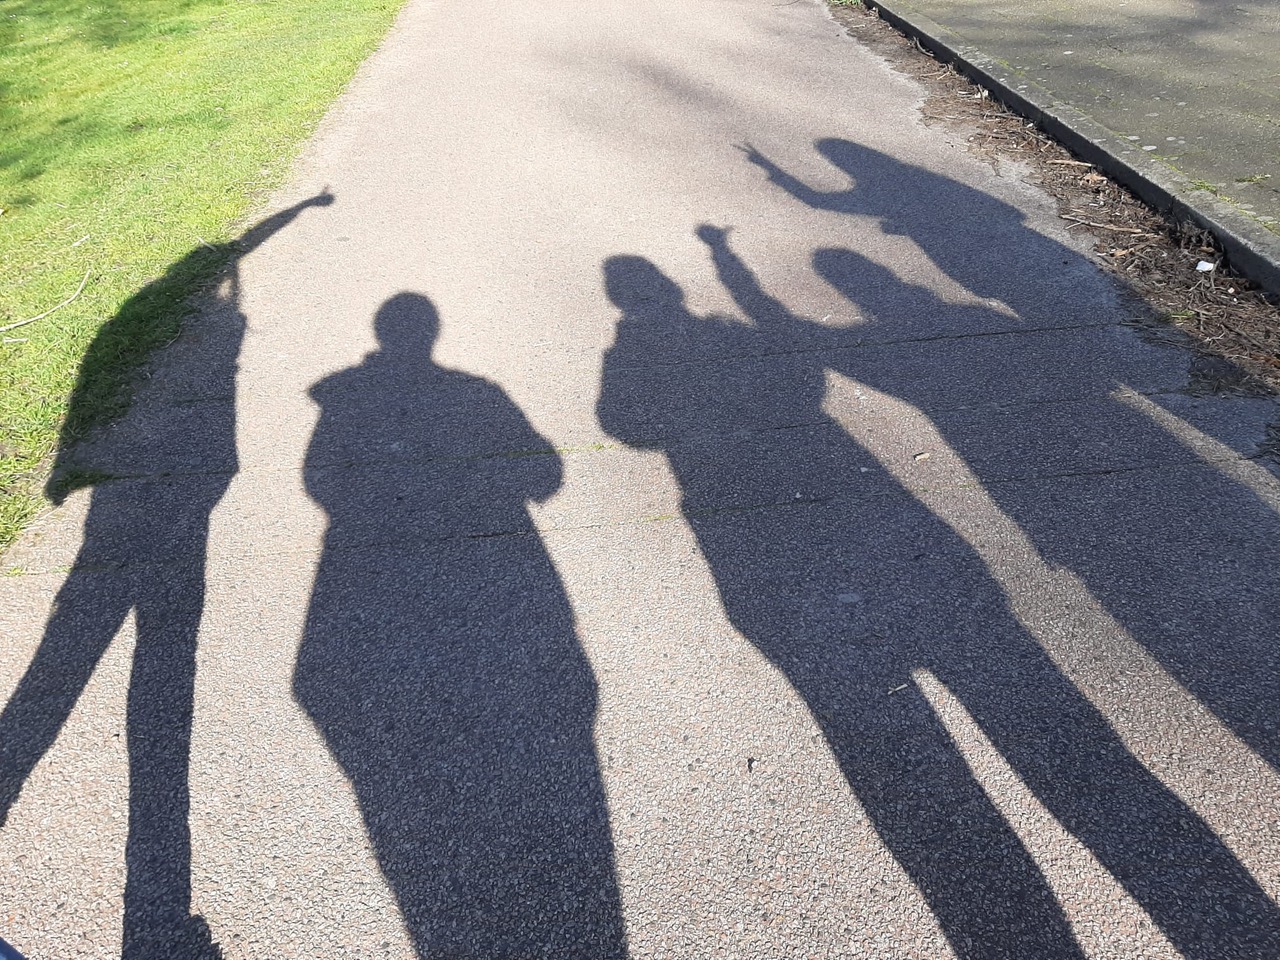 Foto van 5 schaduw silhouetten op een asfalt pad.